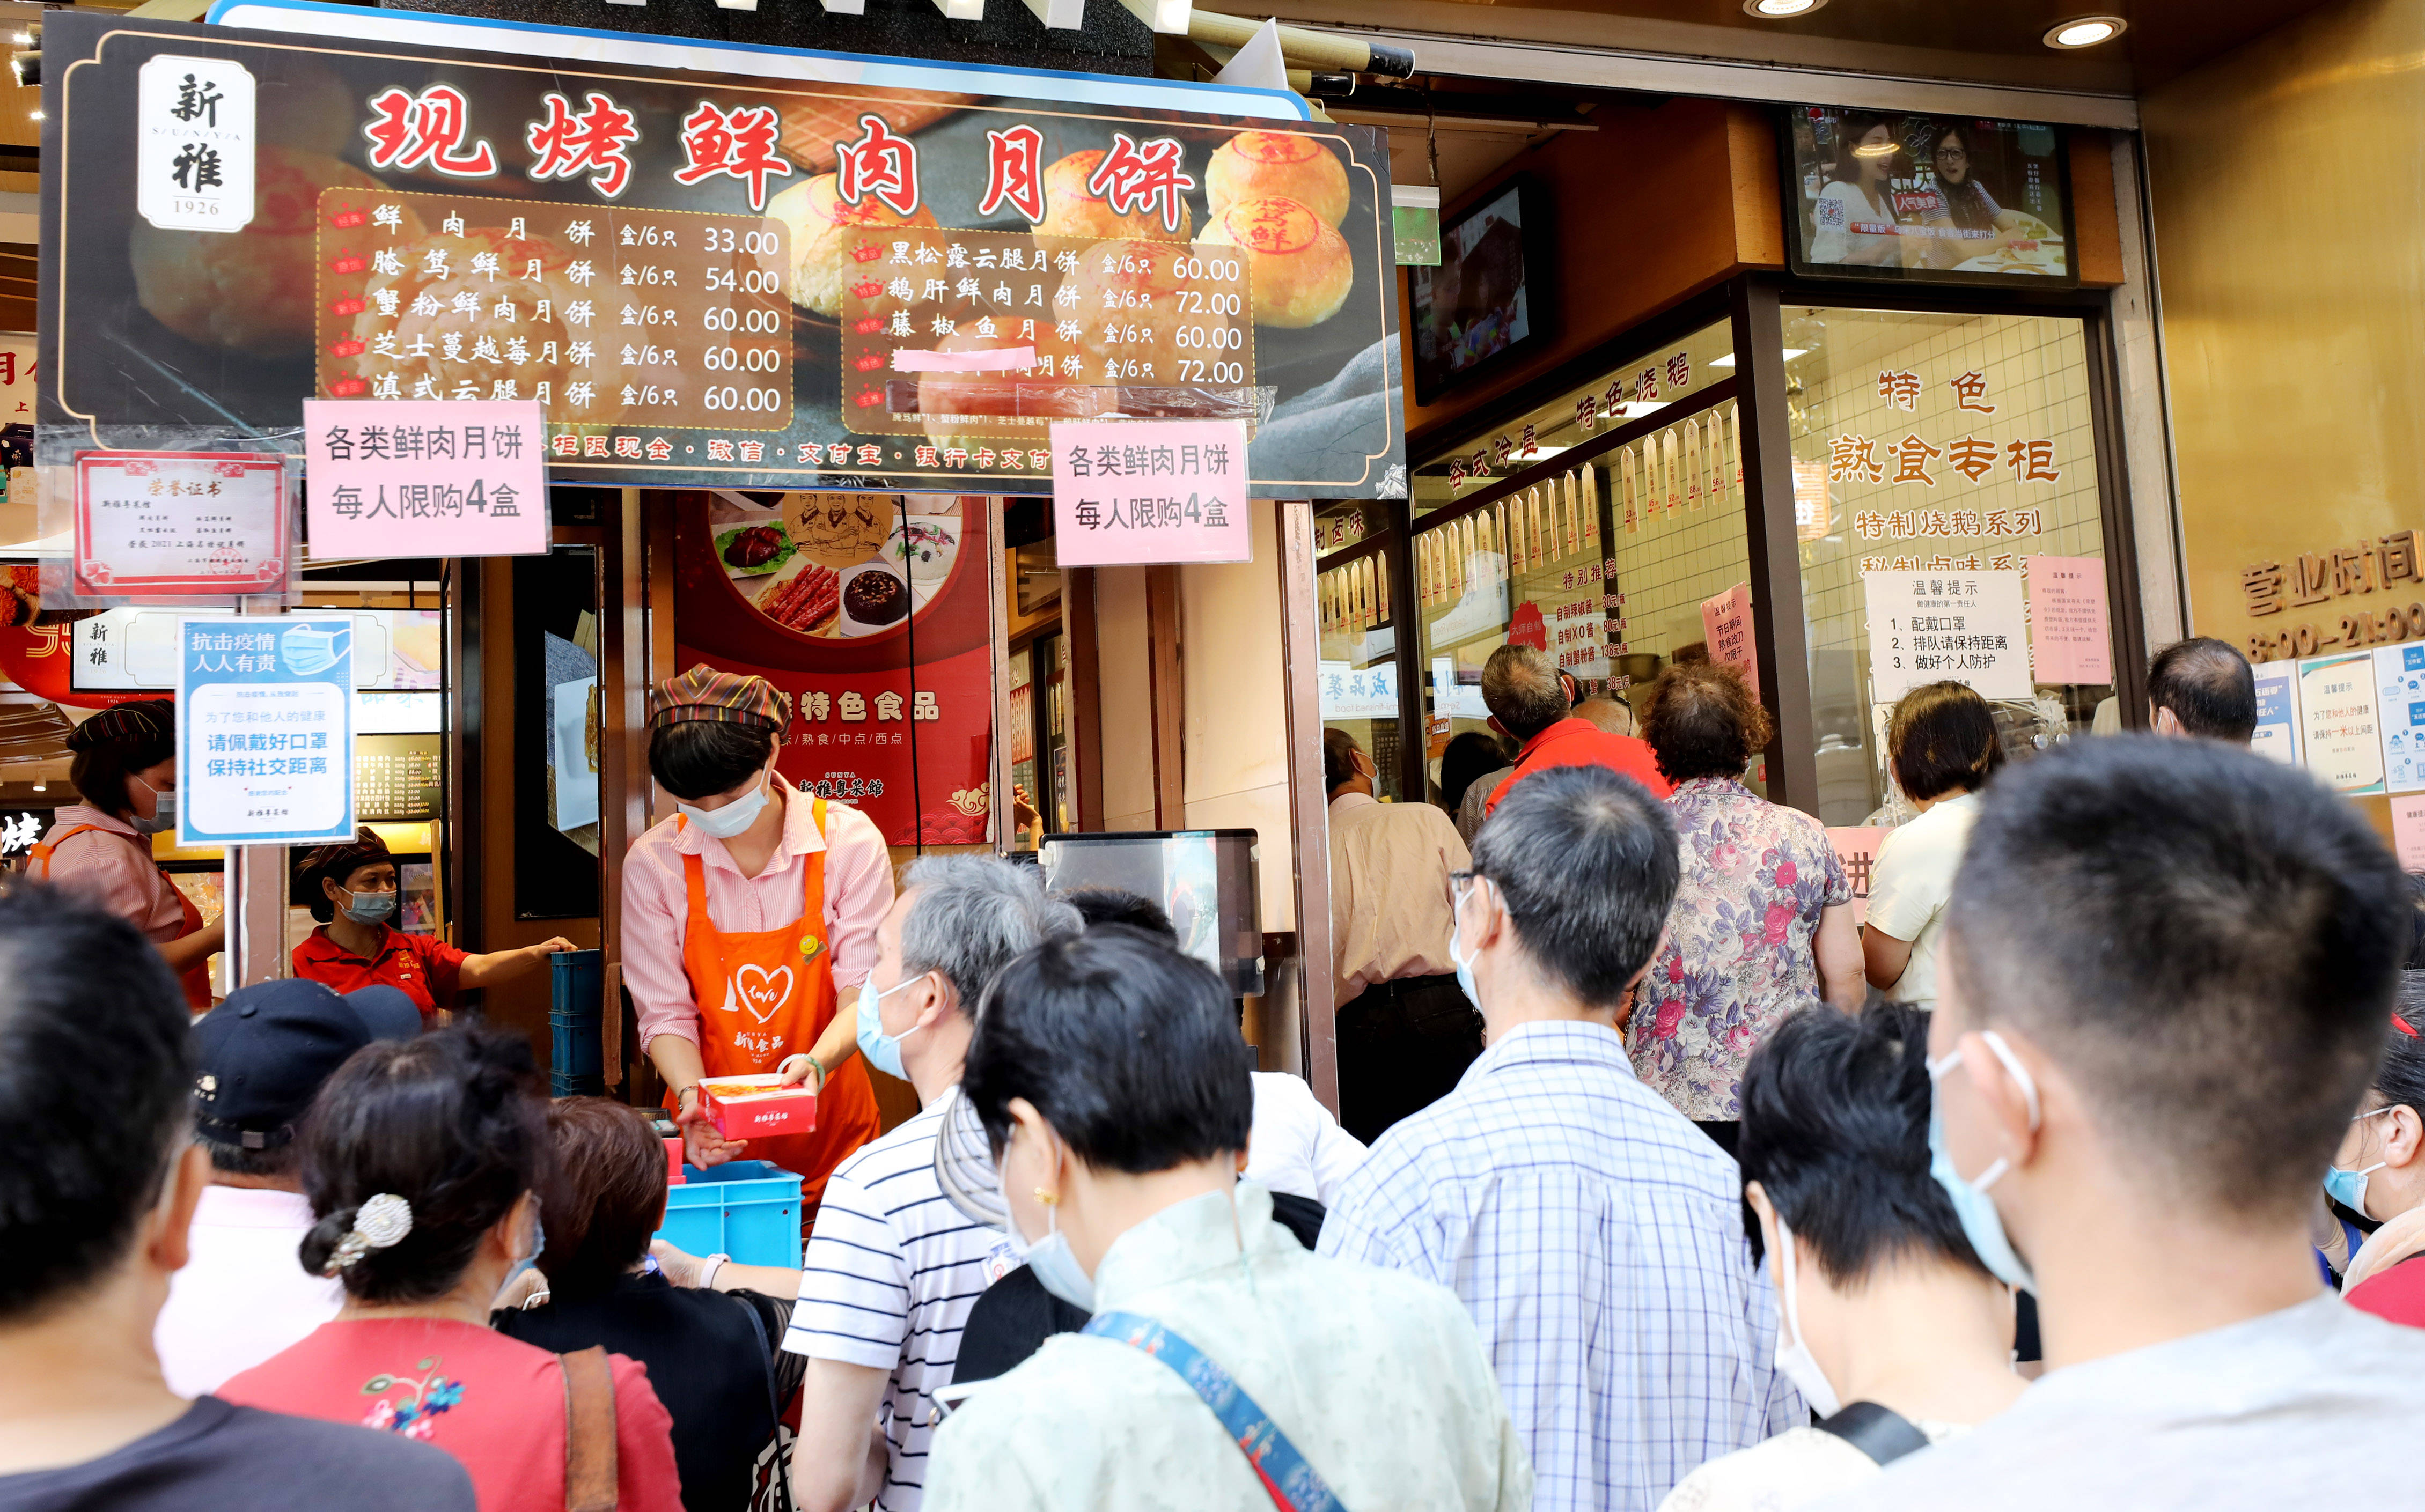 9月21日,市民在上海南京东路上的新雅食品公司内选购熟食上海:老字号